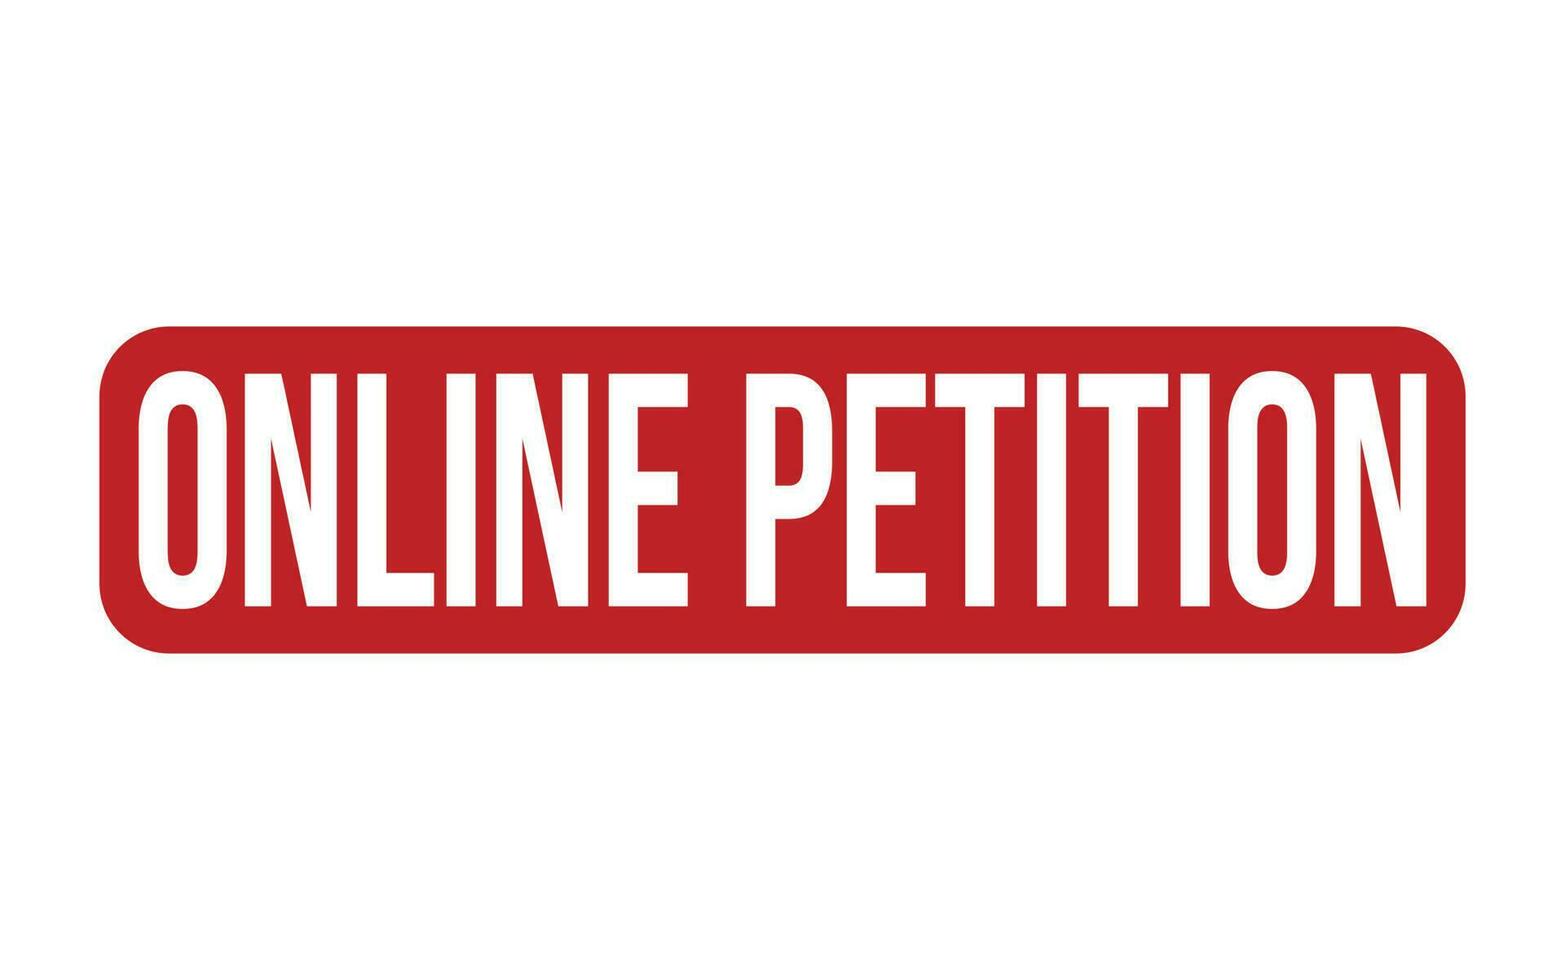 conectados petição borracha carimbo foca vetor